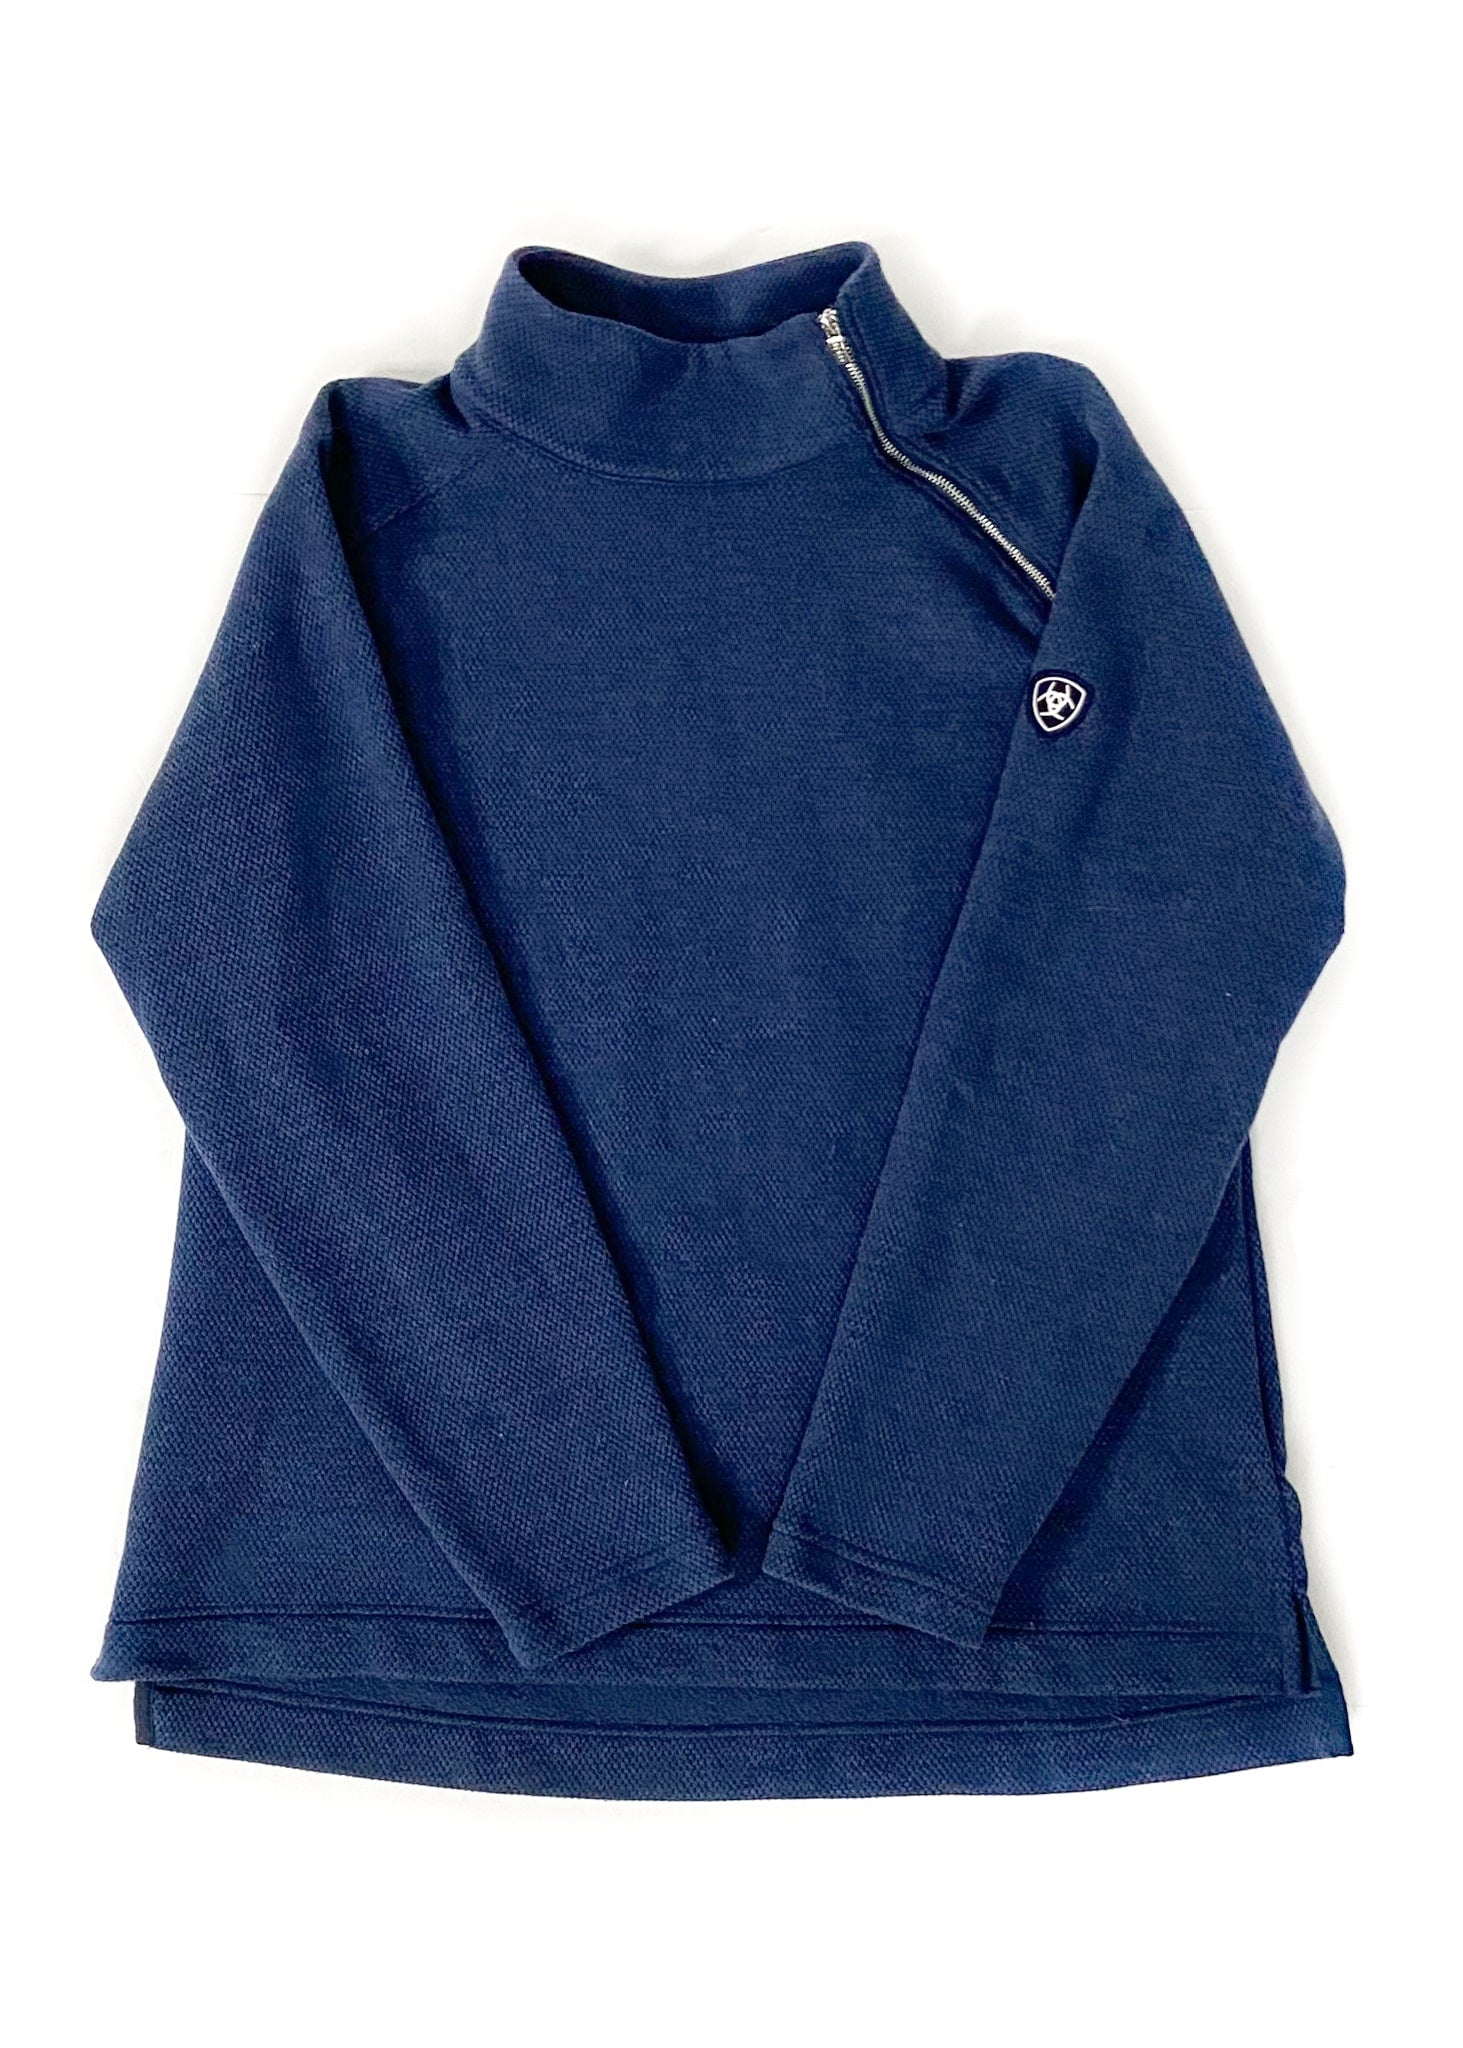 Ariat Tek Sweater - Blue - Women's XL – THE STANDBY LIST